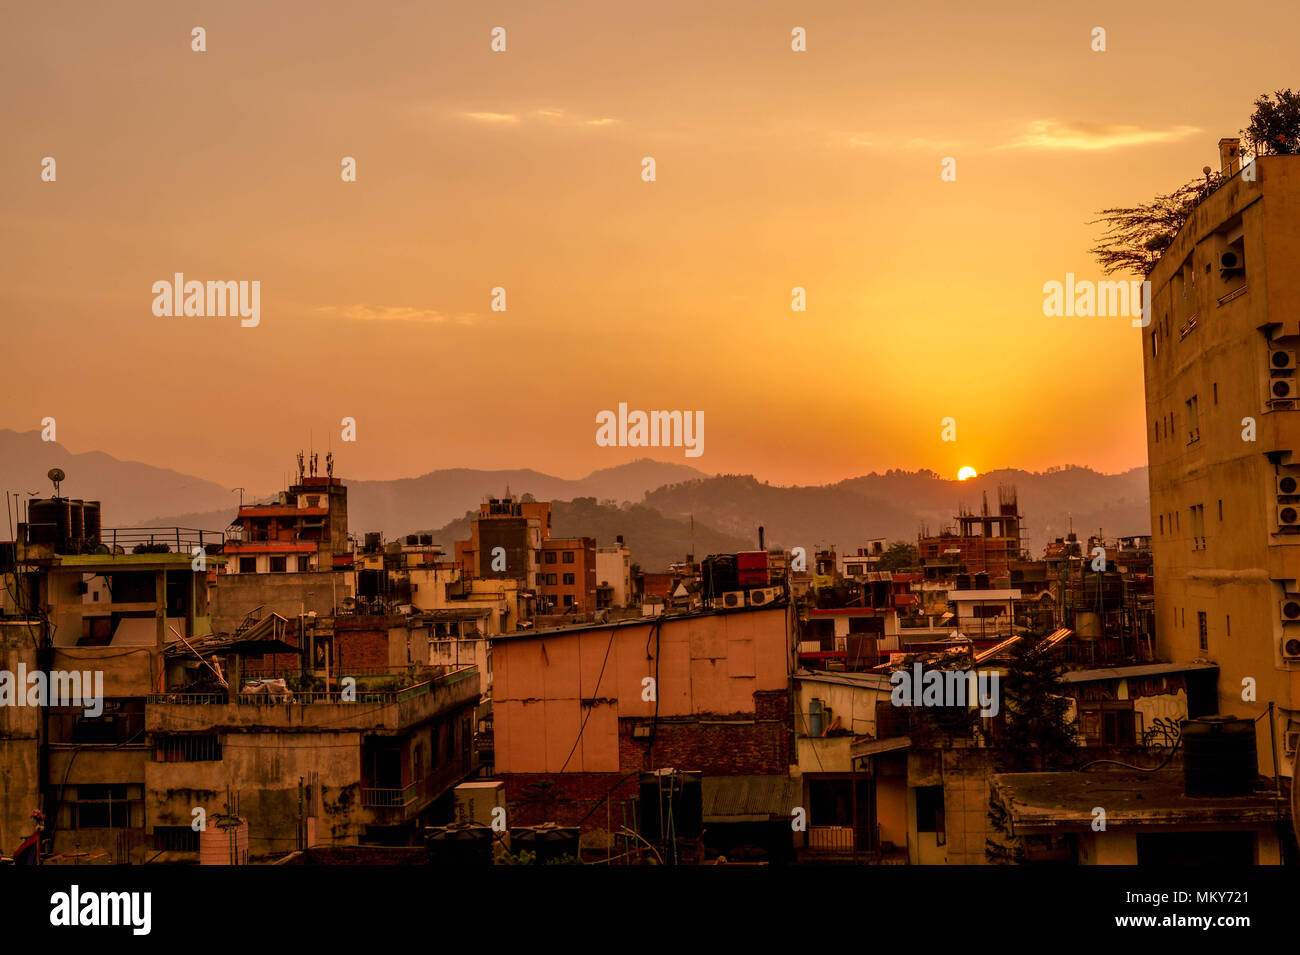 Sunset watching in Thamel, Kathmandu in Nepal Stock Photo